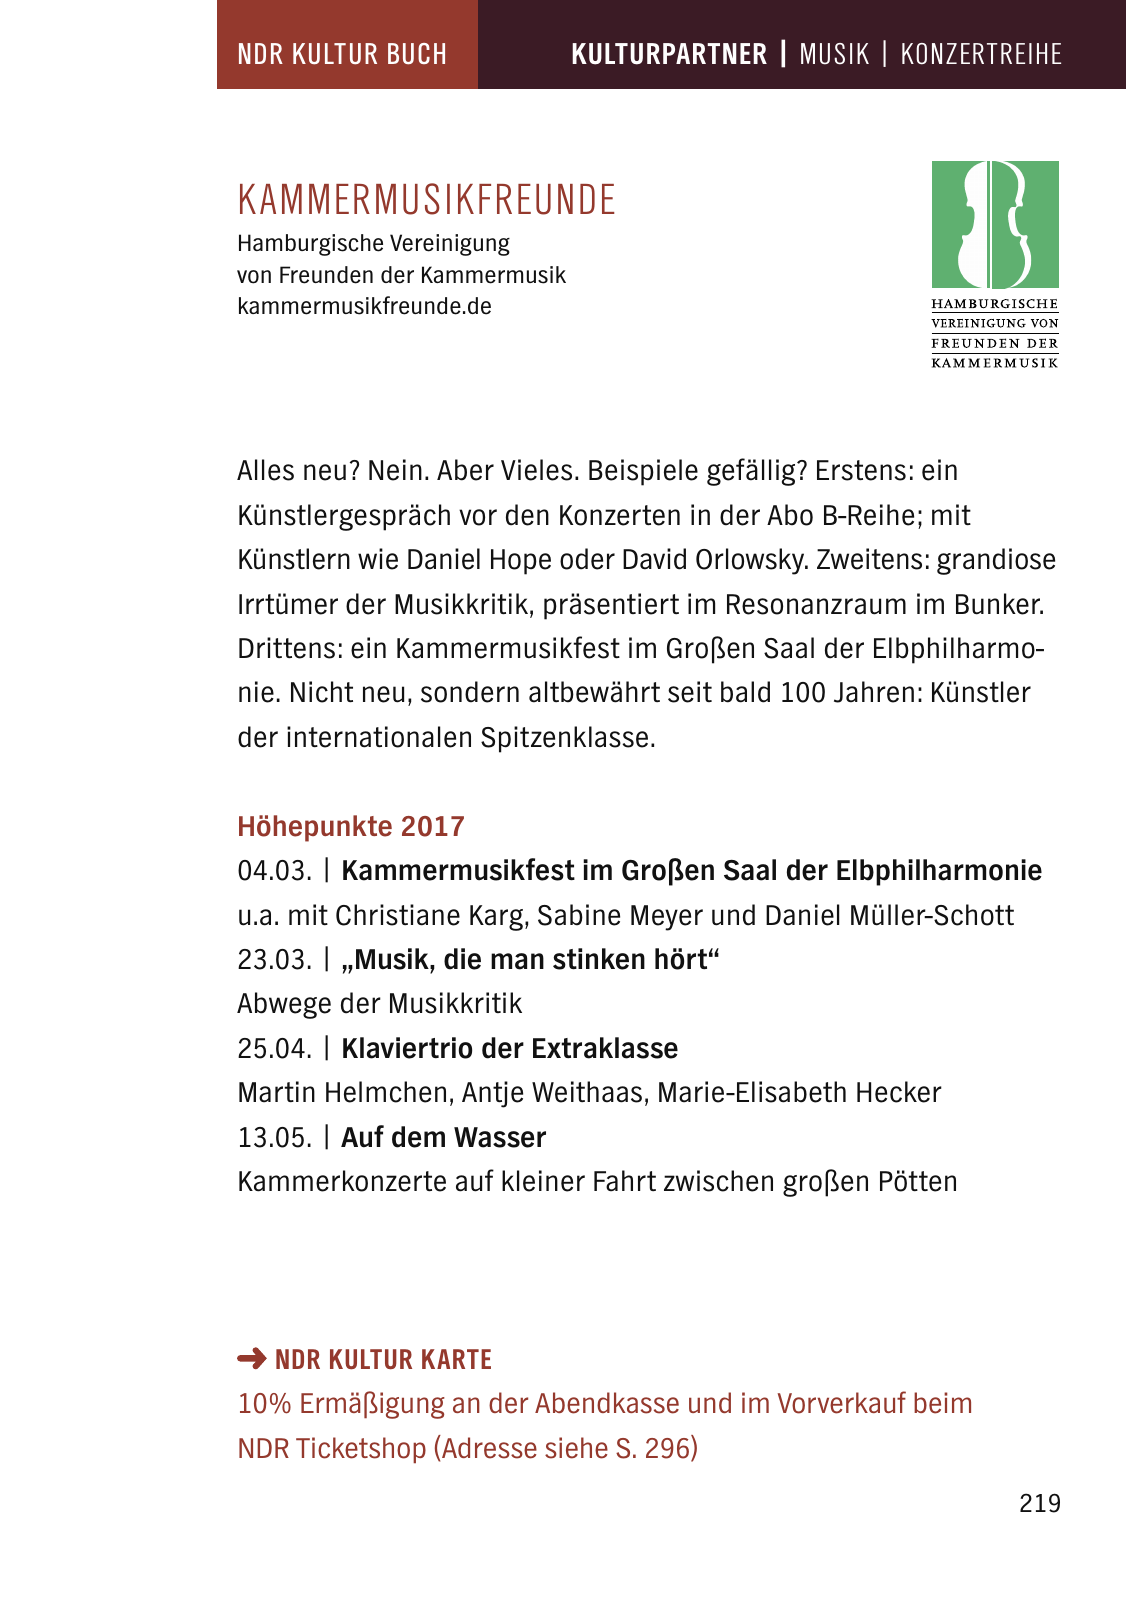 Vorschau NDR Kultur Buch 2017 Seite 221